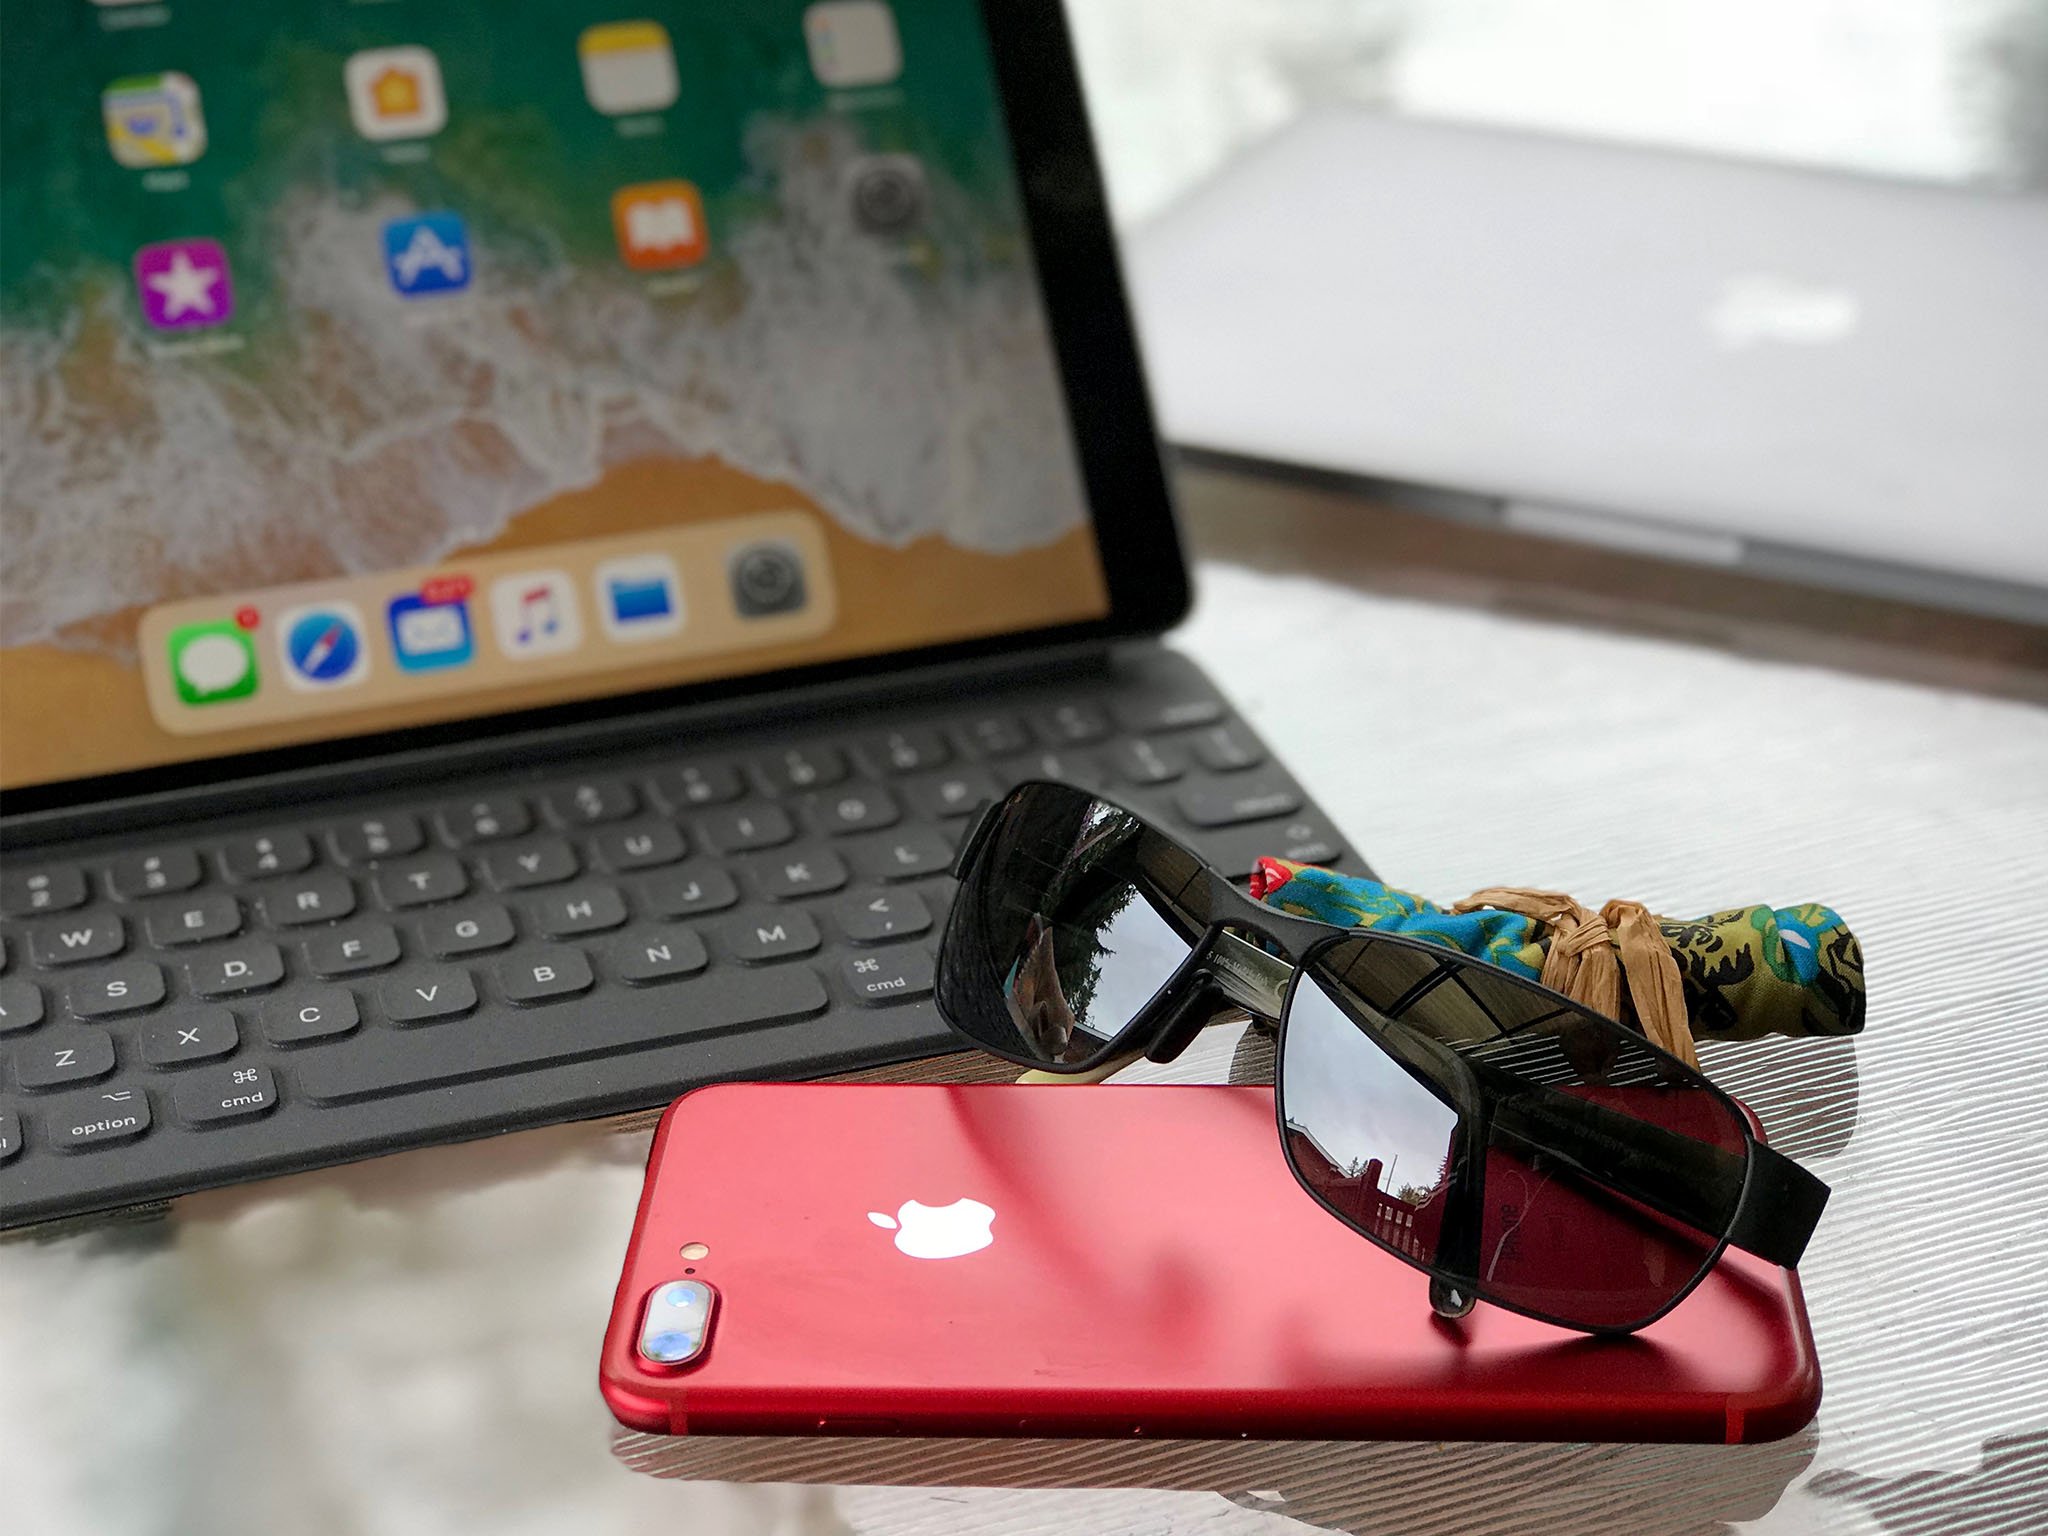 iPhone, iPad, and sunglasses